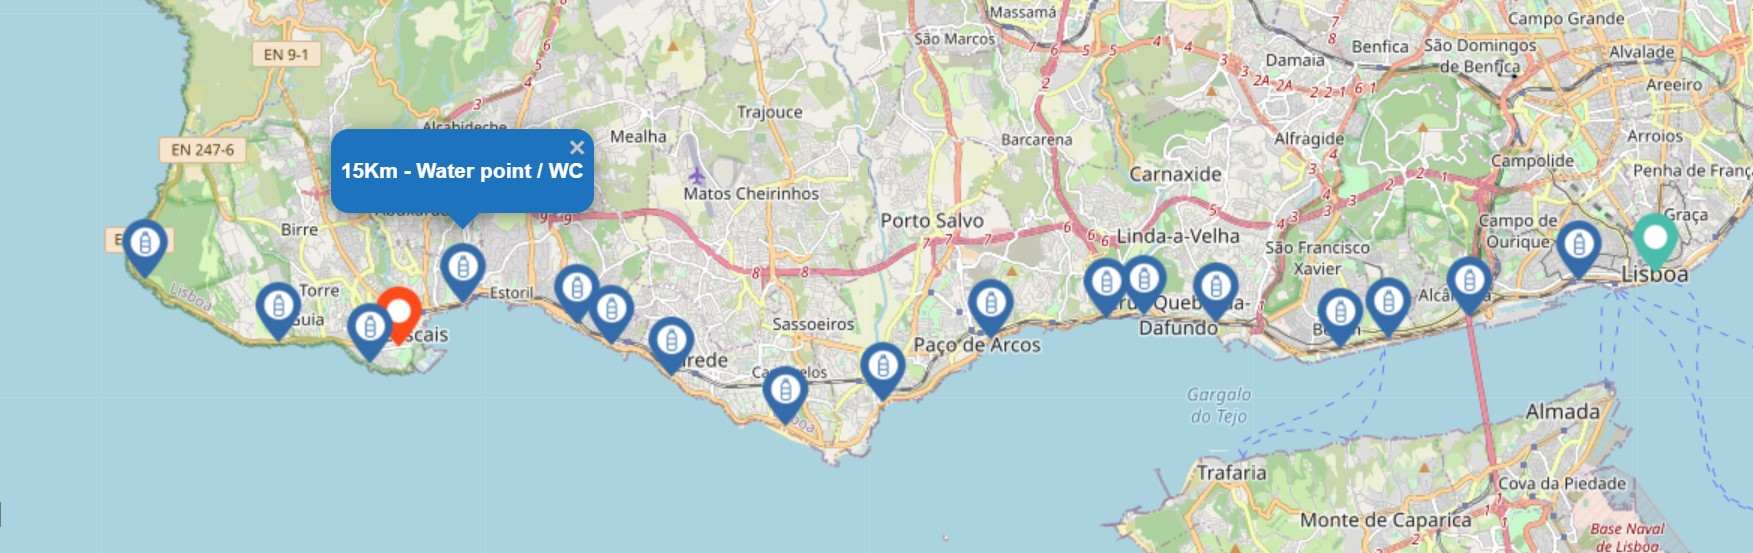 Lisbon Marathon Course Map